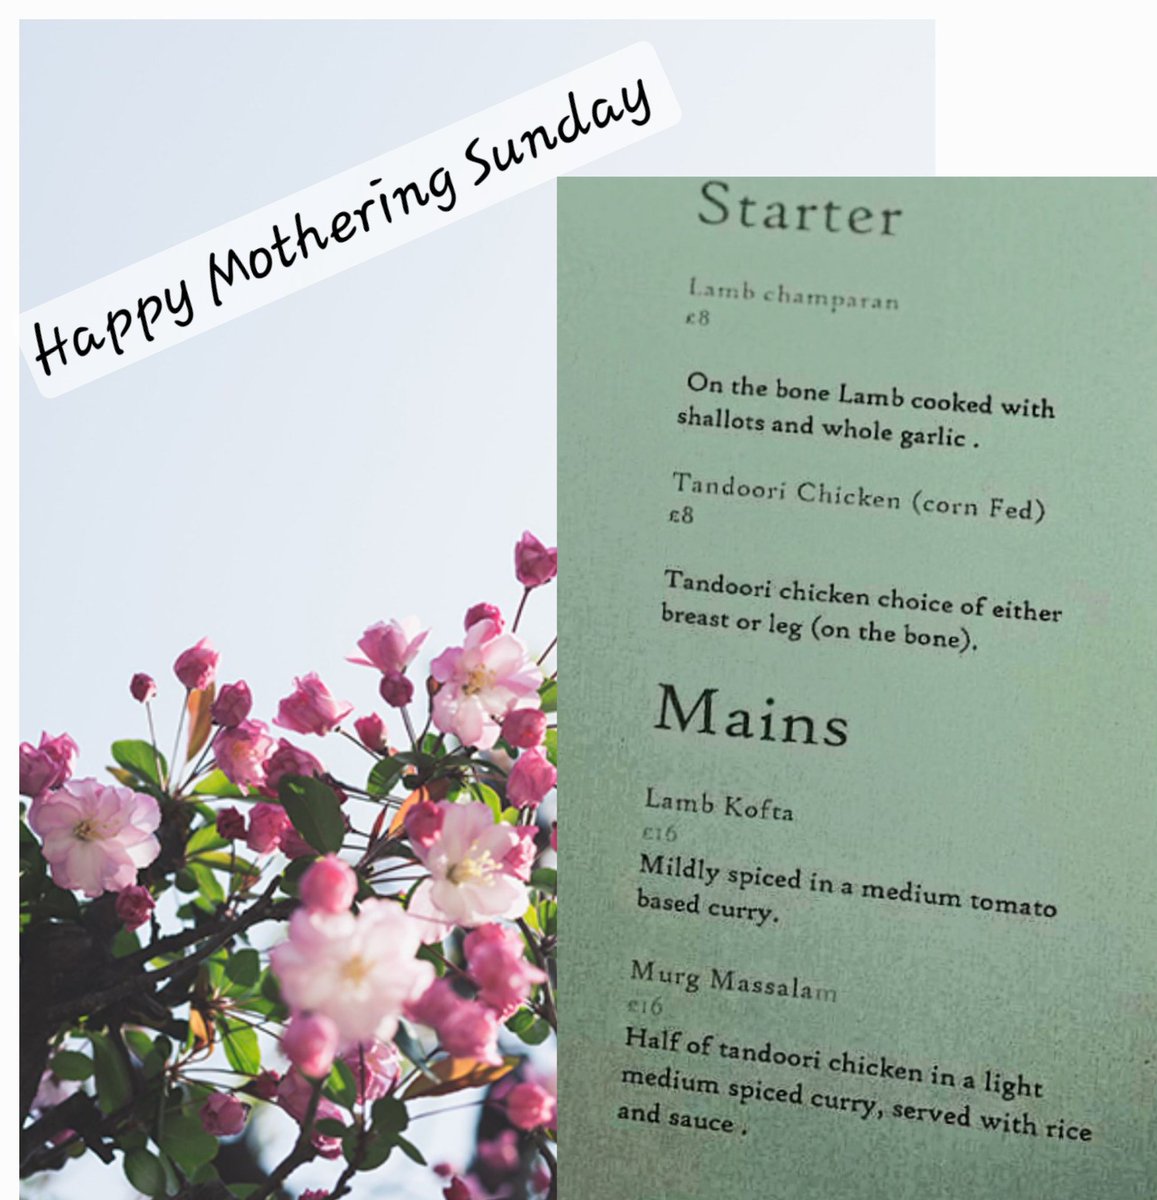 Happy Mother's Day! Wishing you a day as special you are 🥰 
#Sarpech #Mothersday #Mothersdayfood #Mothersdayspecial #Oakham #Rutland #Uppingham #Stamford #melton #meltonmowbray #langham #Barleythorpe #oakhamrutland #bar #beer #drinks #cocktail